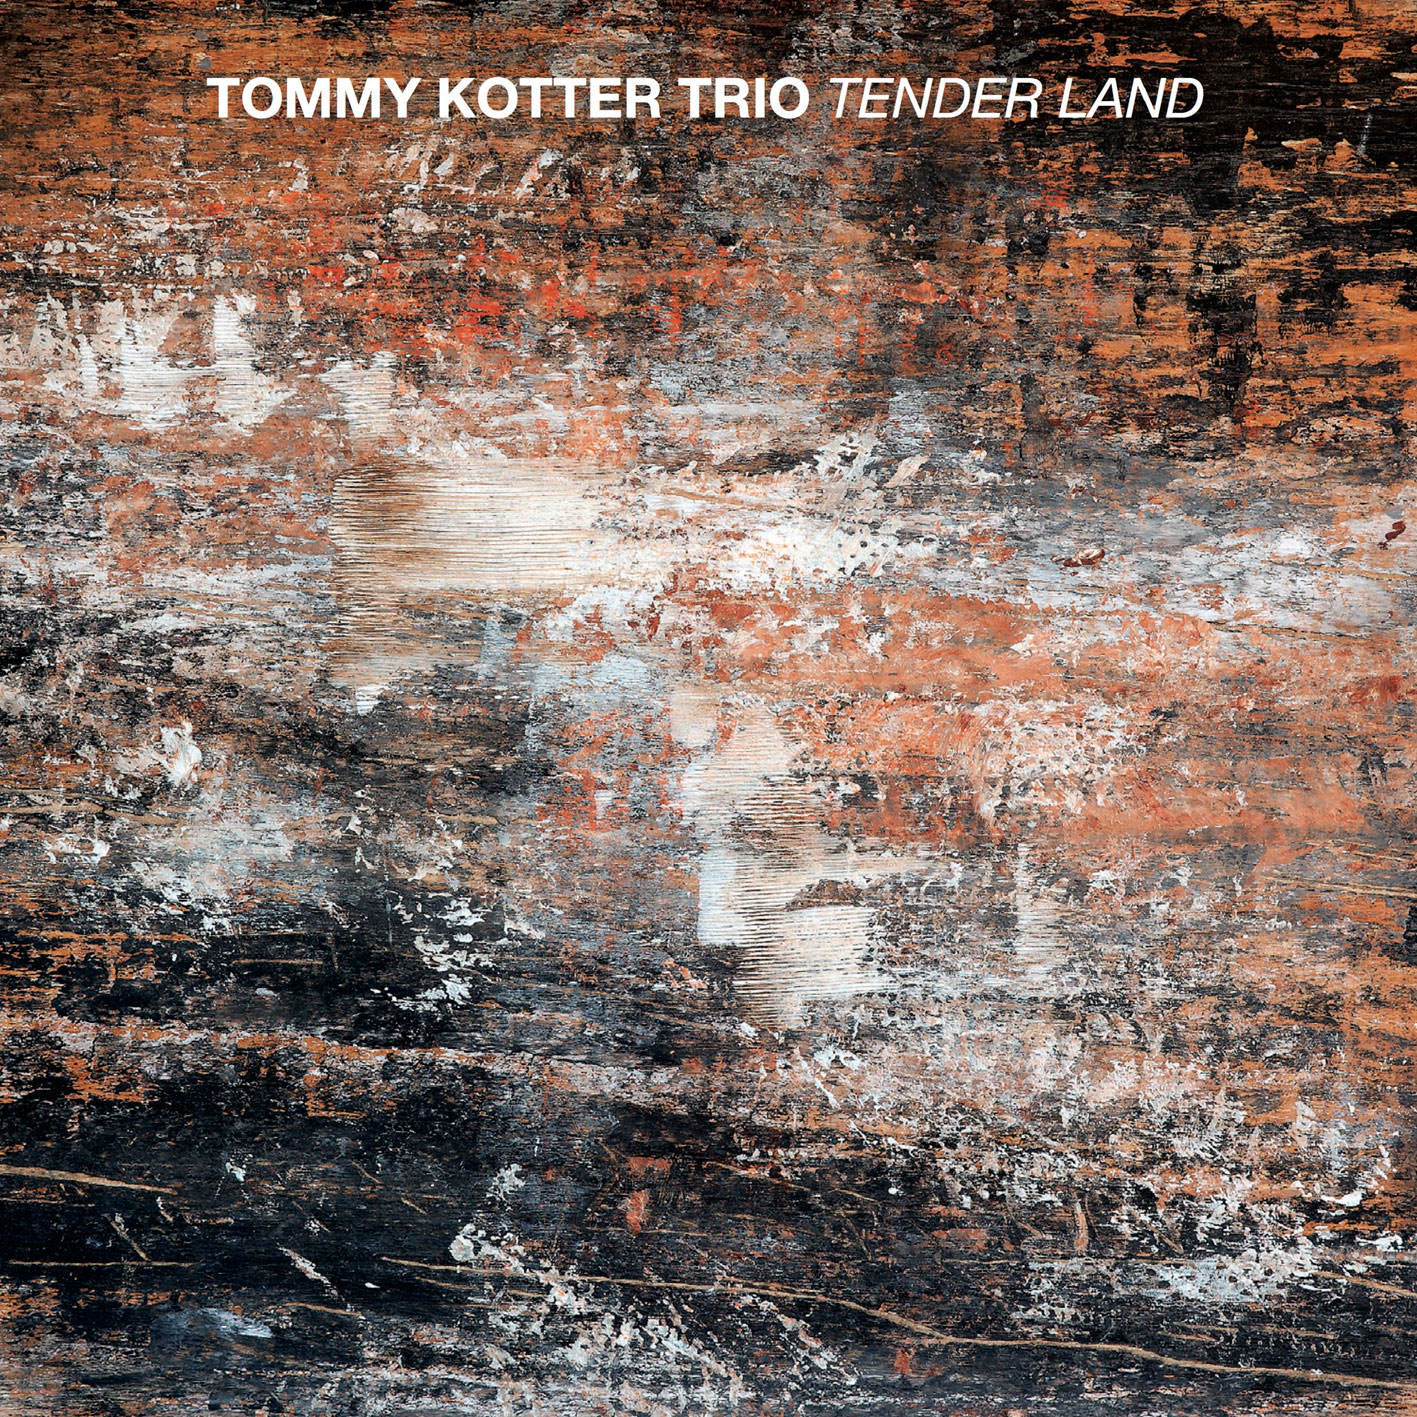 Tommy Kotter Trio – Tender Land (2017) [HDTracks FLAC 24bit/96kHz]